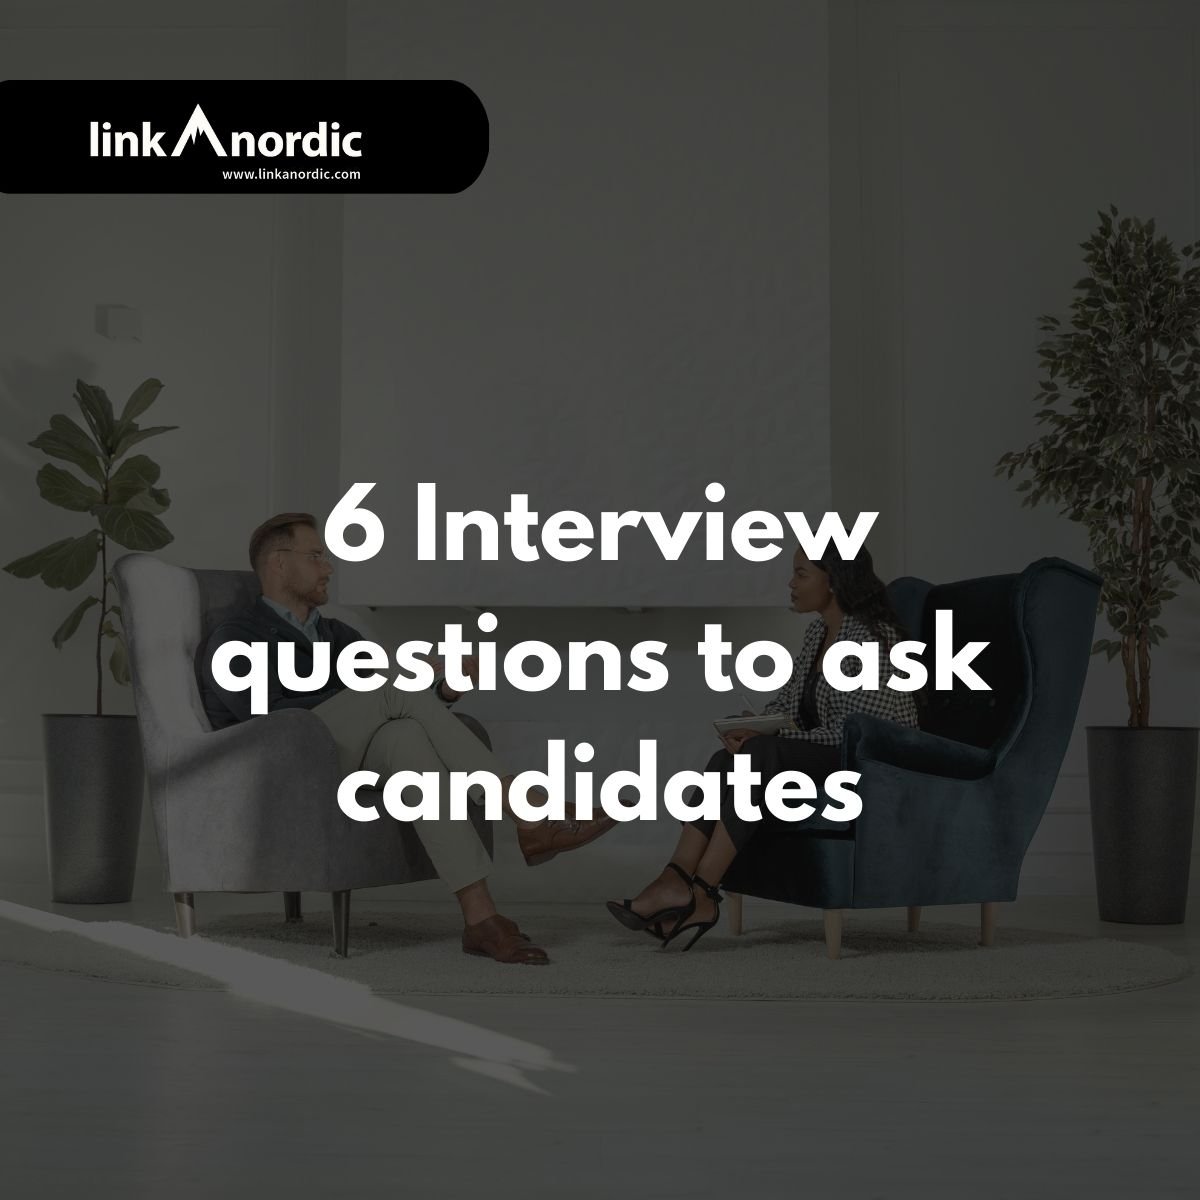 6 spørsmål du bør stille kandidatene i intervjuet